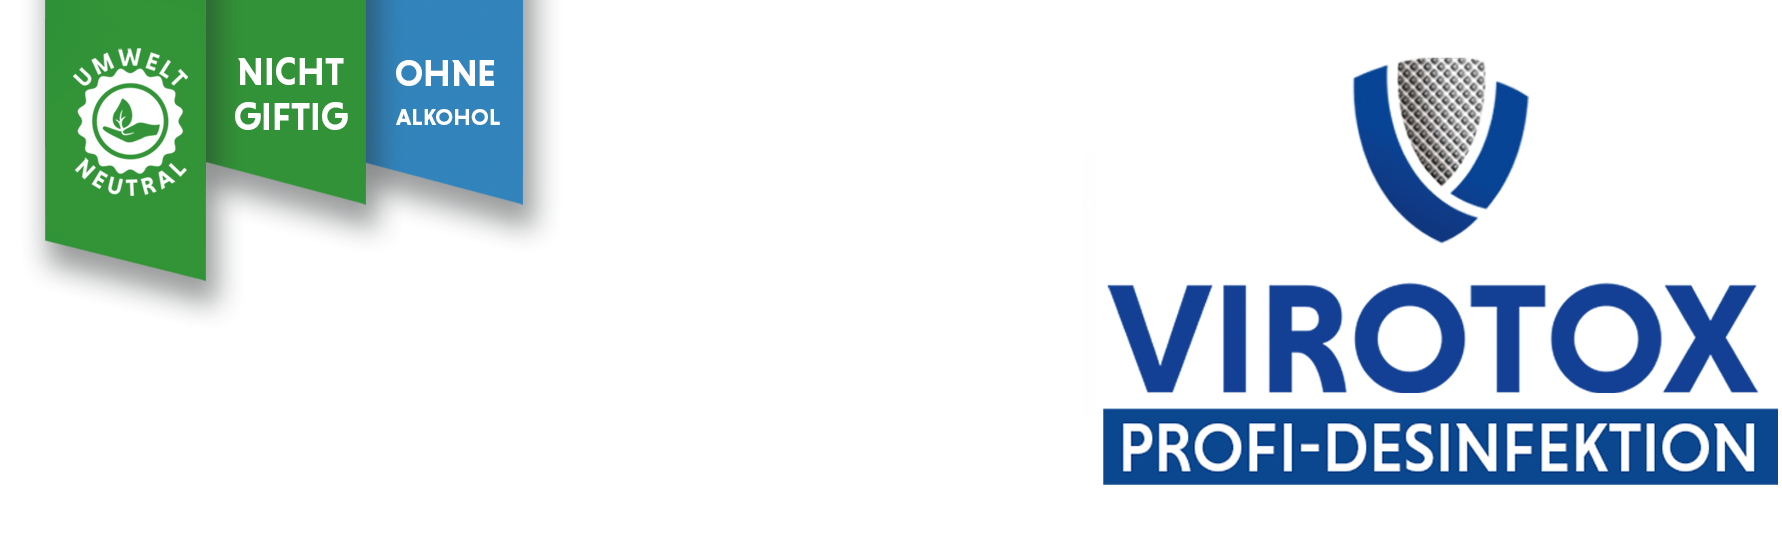 Logo  VIROTOX-Profi-Desinfektion